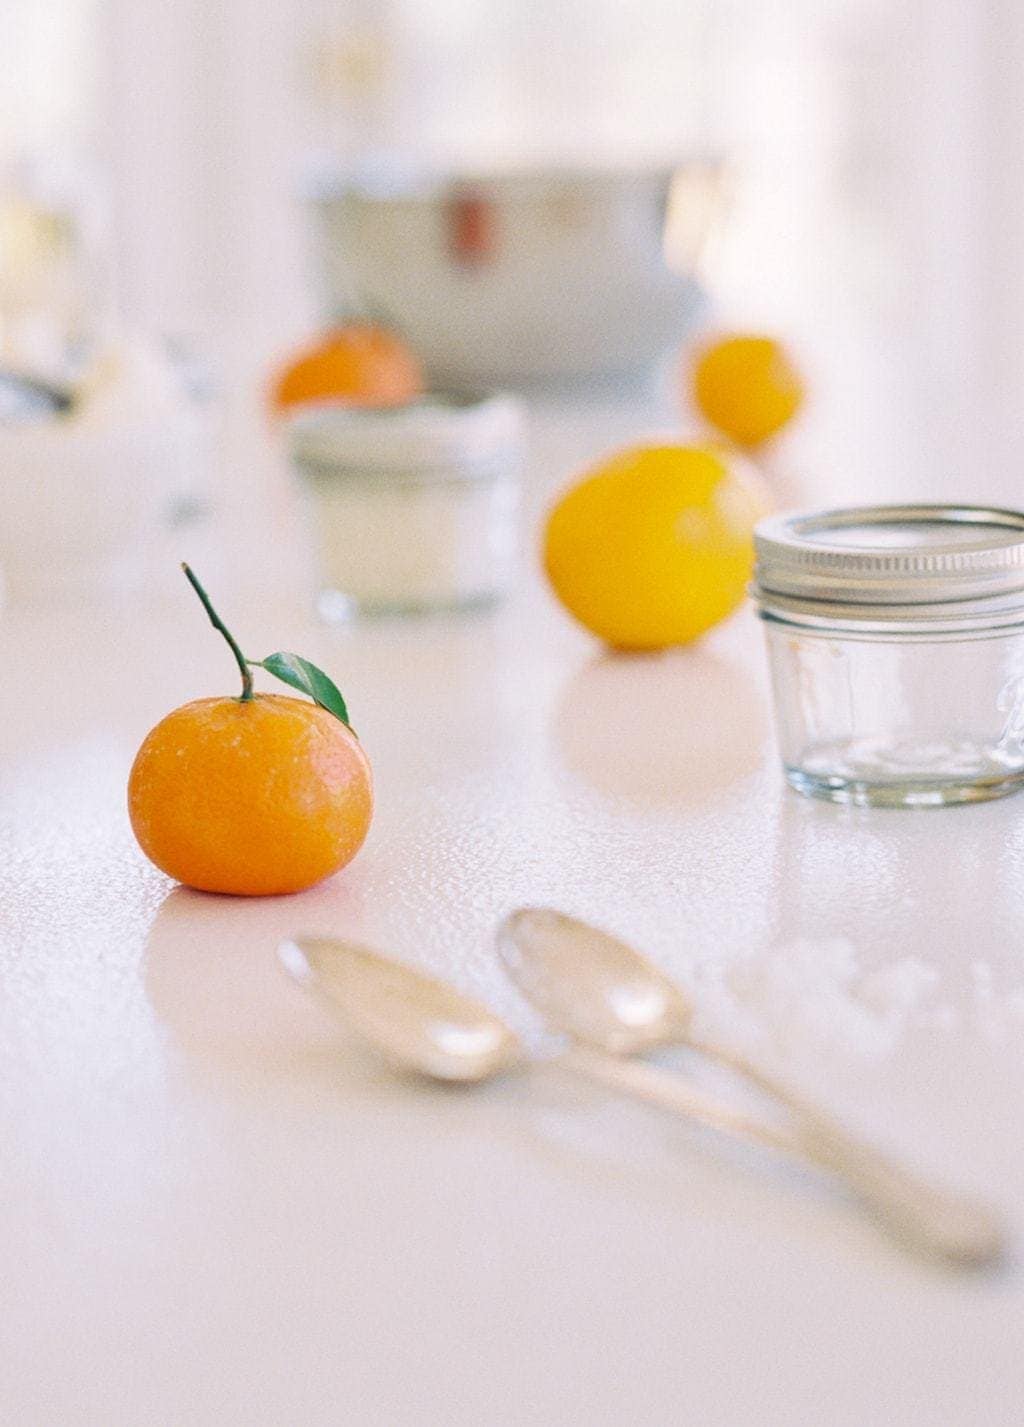 橙子丁香磨砂食谱成分放在白色表面上。